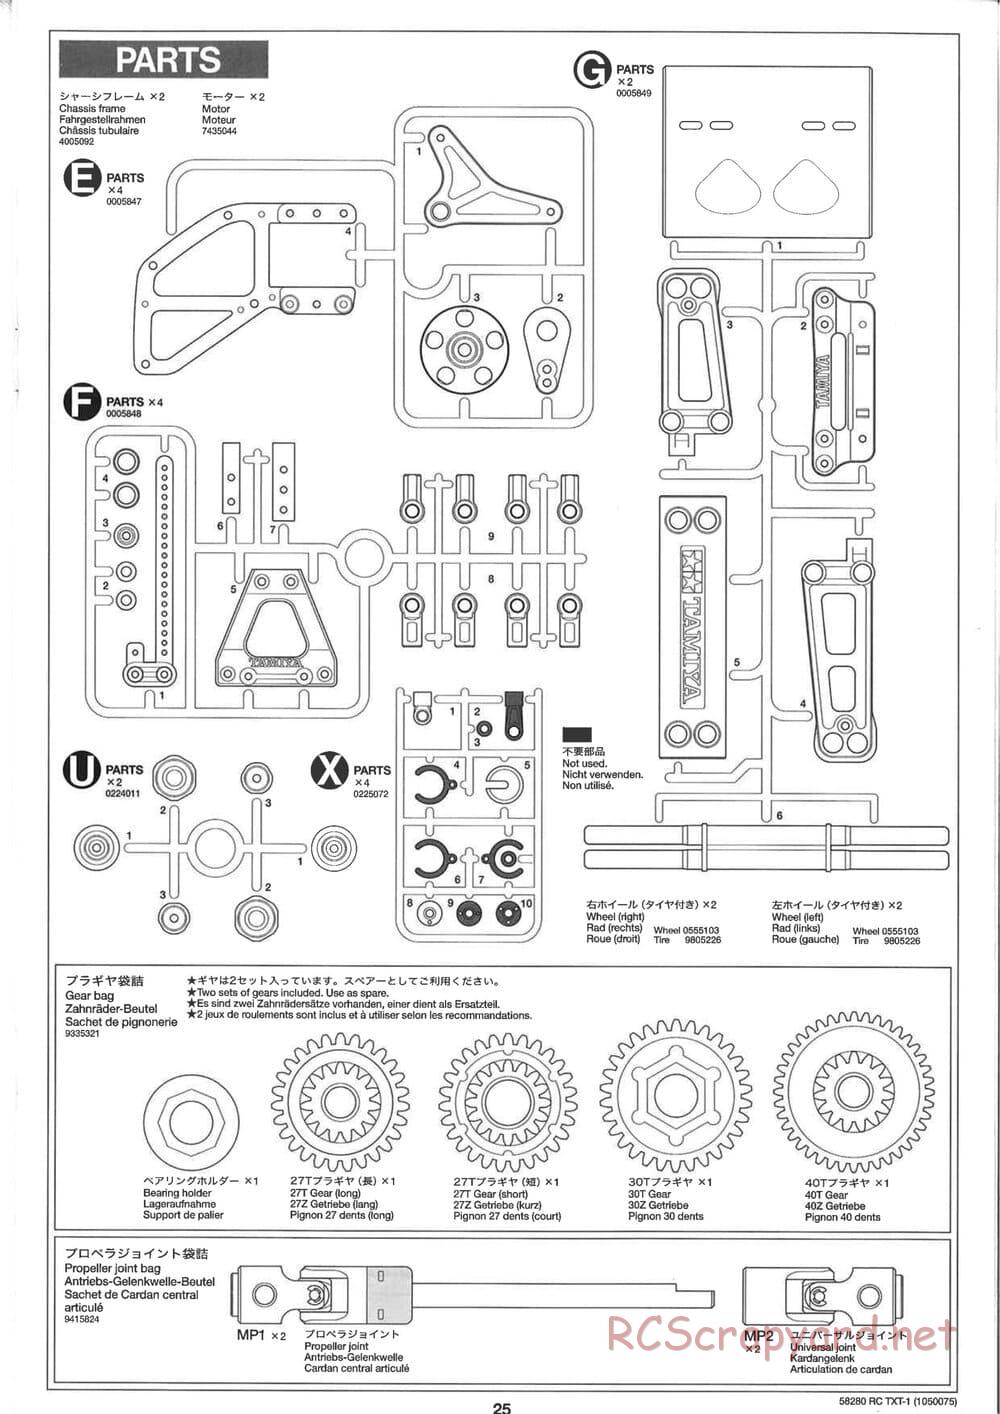 Tamiya - TXT-1 (Tamiya Xtreme Truck) Chassis - Manual - Page 25